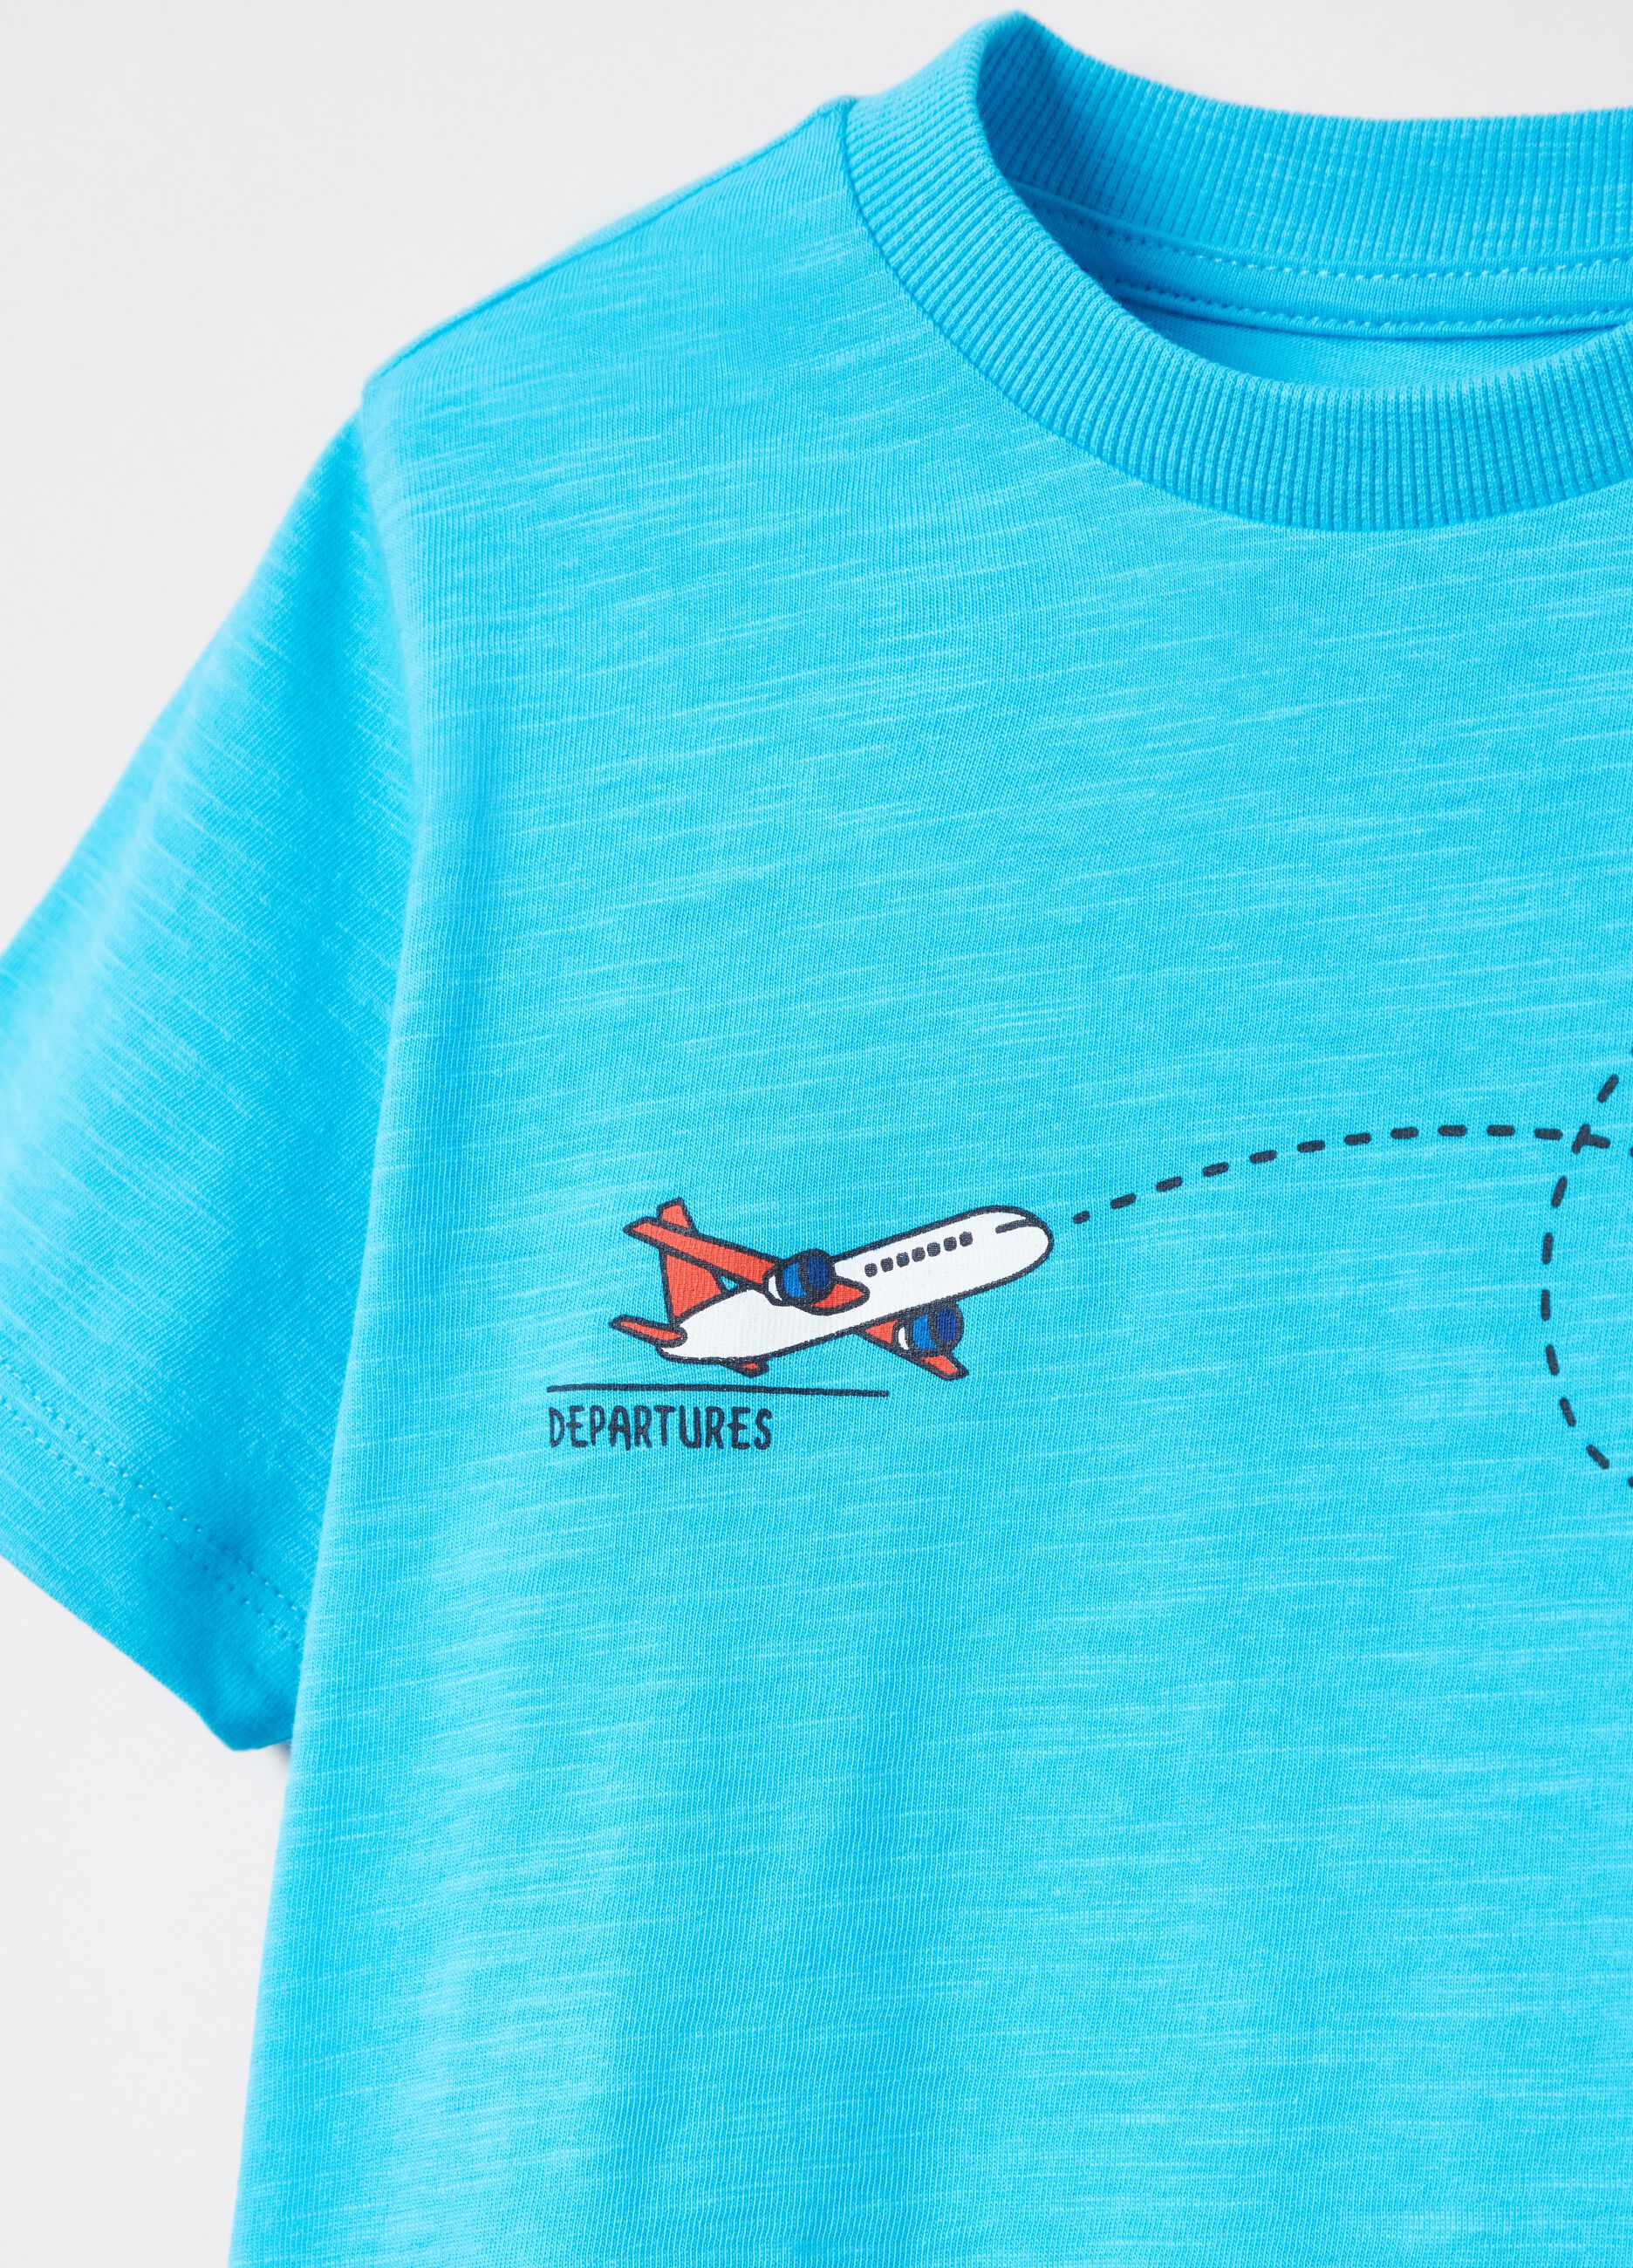 Camiseta de algodón con estampado avión